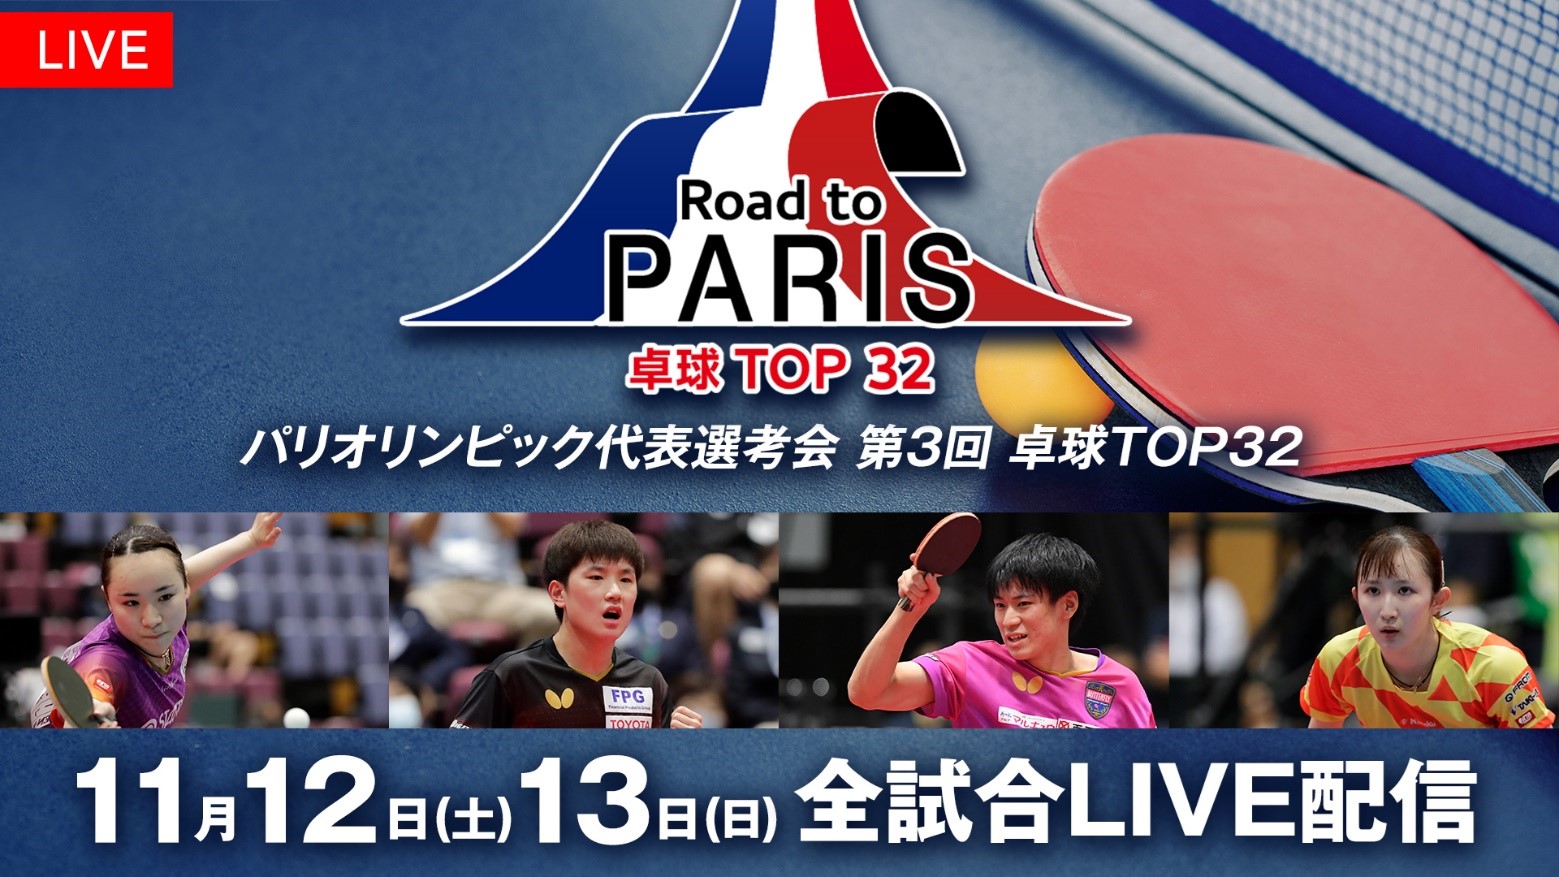 伊藤美誠や張本智和ら日本のトップ選手が出場『第3回 卓球 TOP32』全試合をLIVE配信